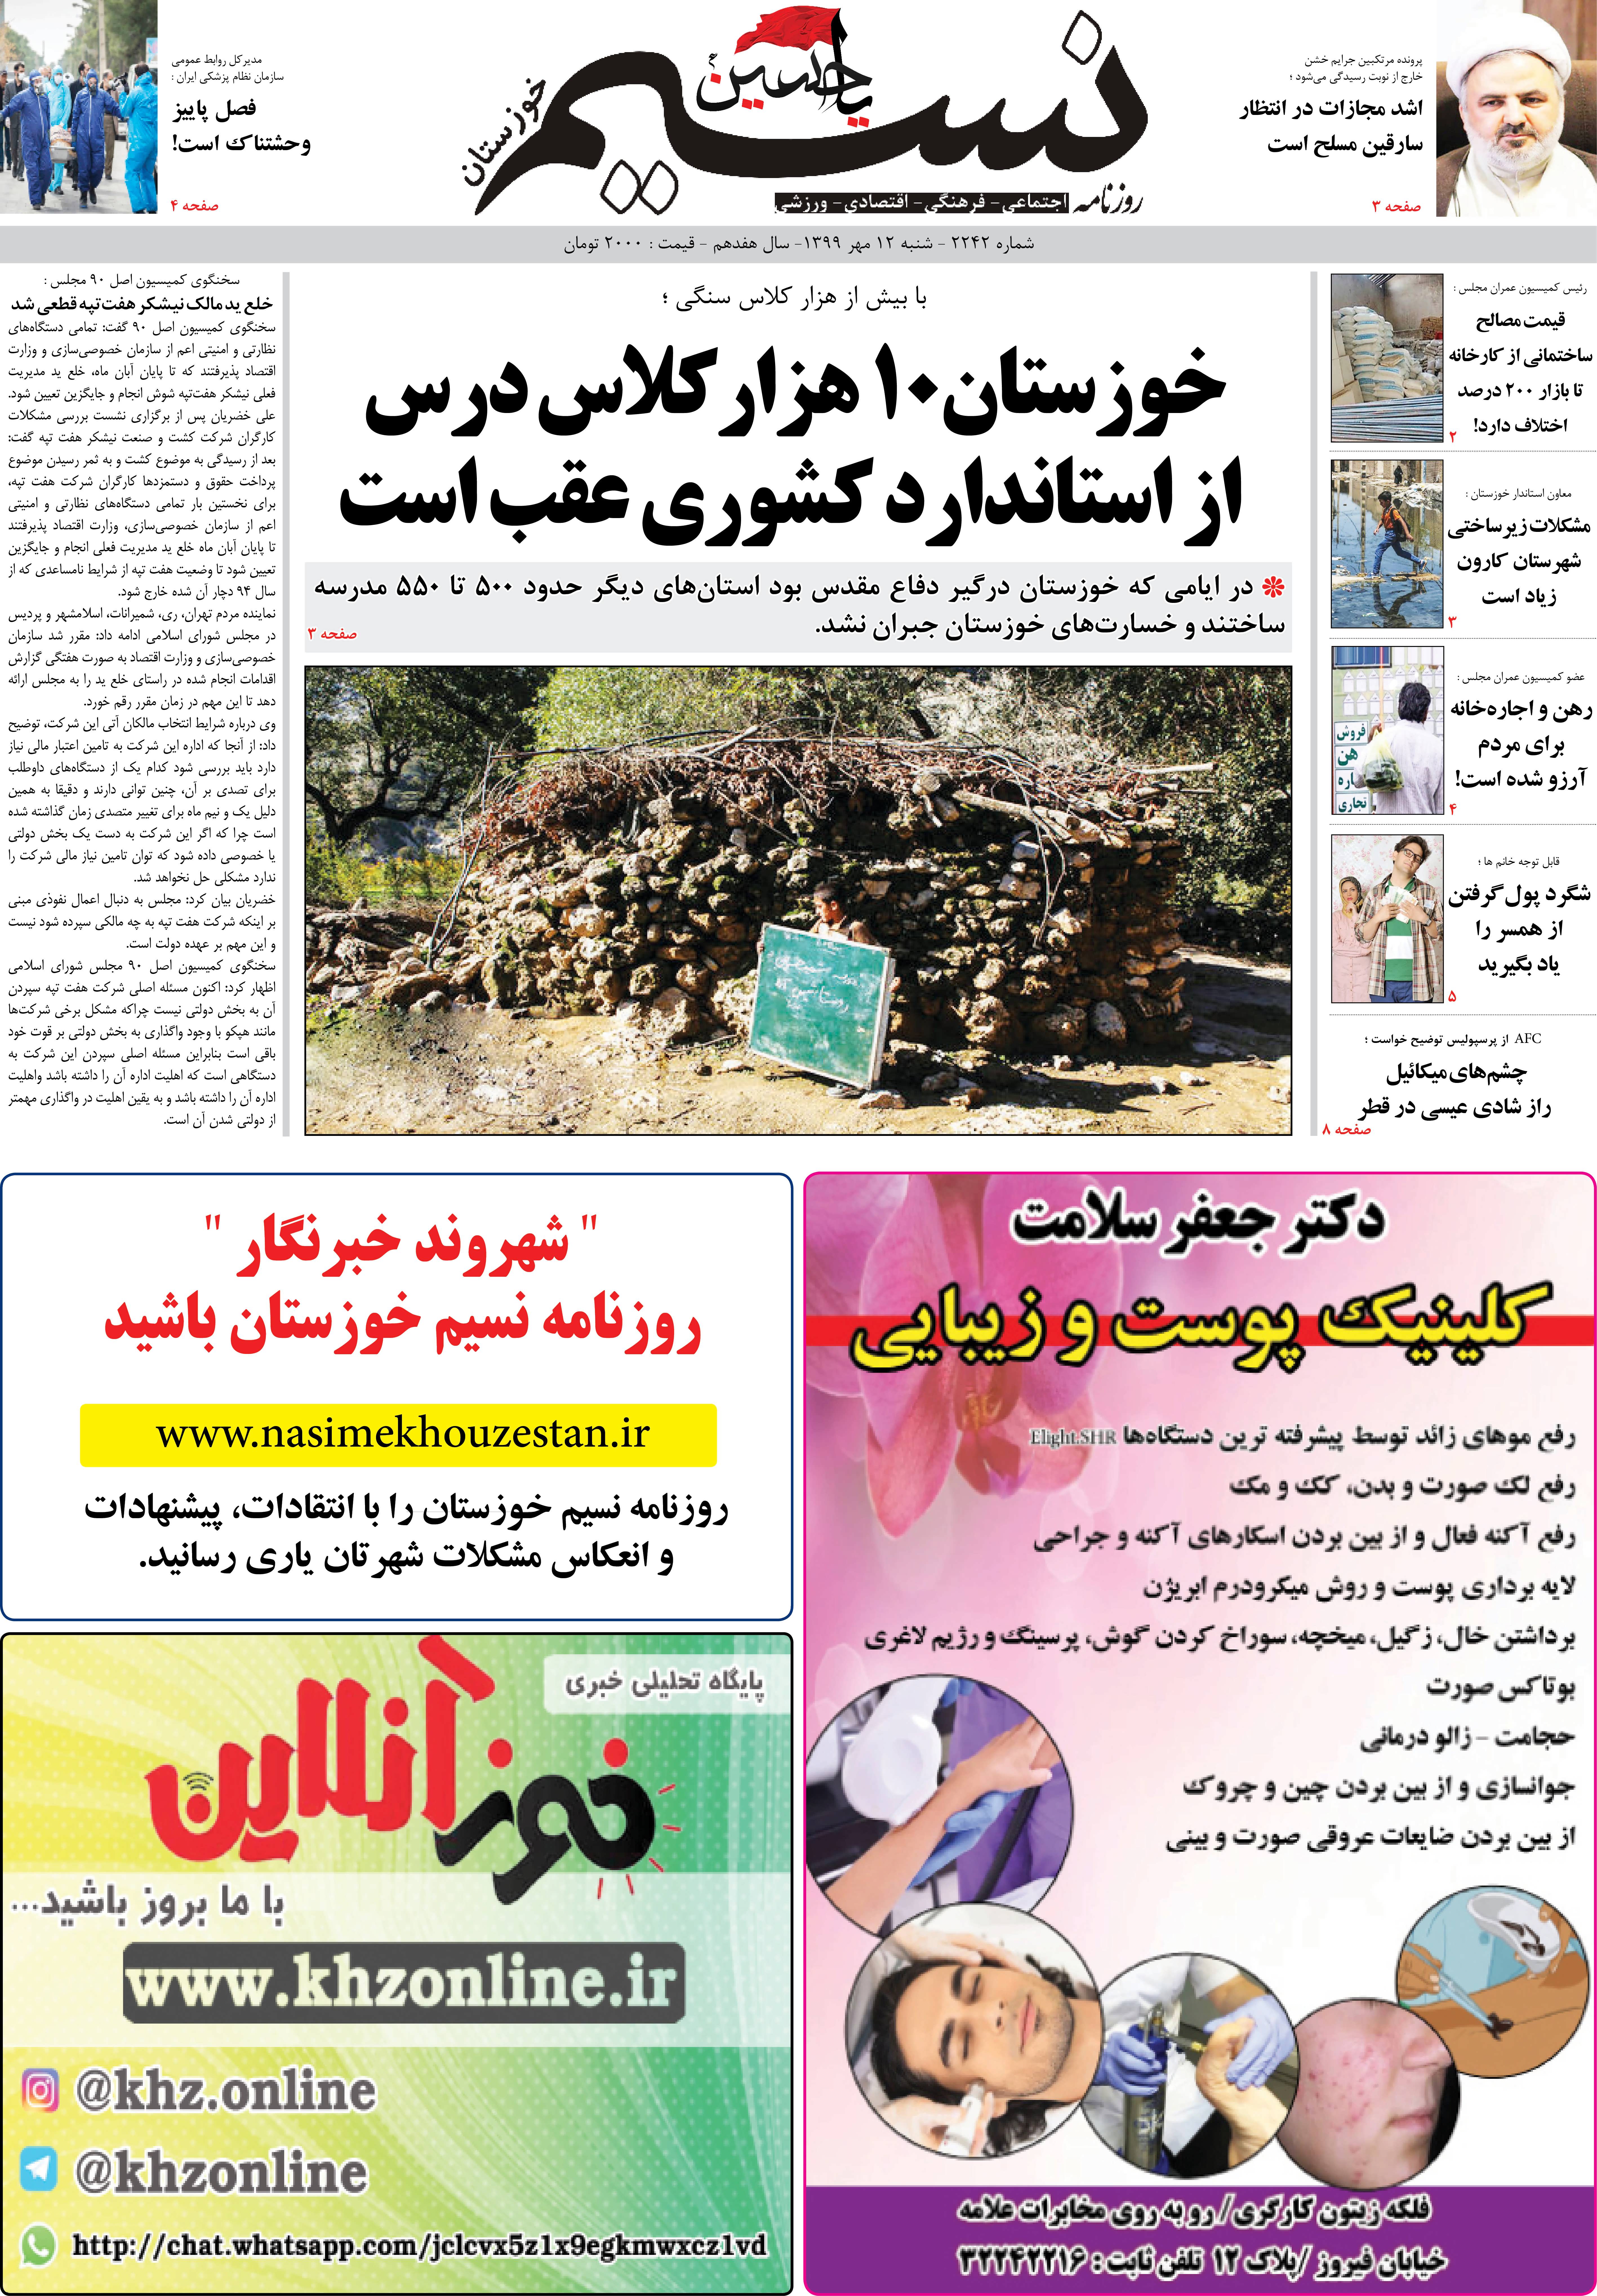 صفحه اصلی روزنامه نسیم شماره 2242 